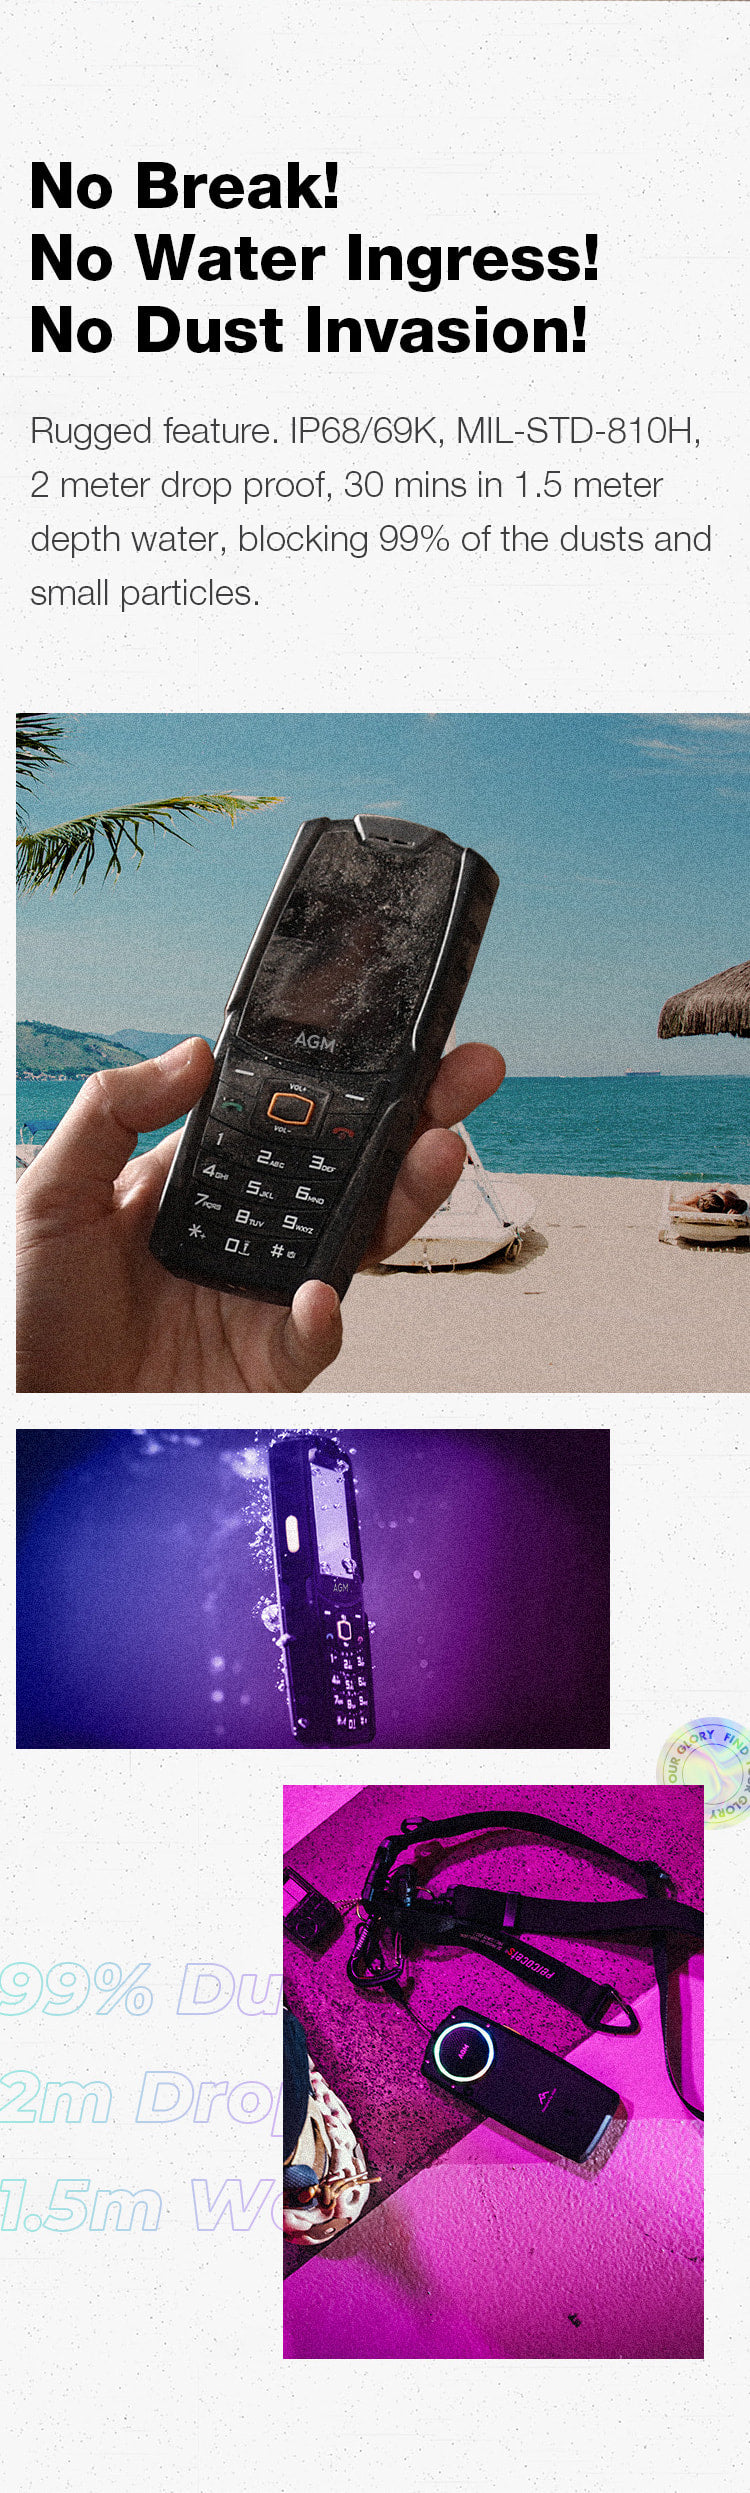 Agm M6 4g Unlocked Rugged Feature Phone 2.4 Screen 48mb + 128mb 2500mah  Battery